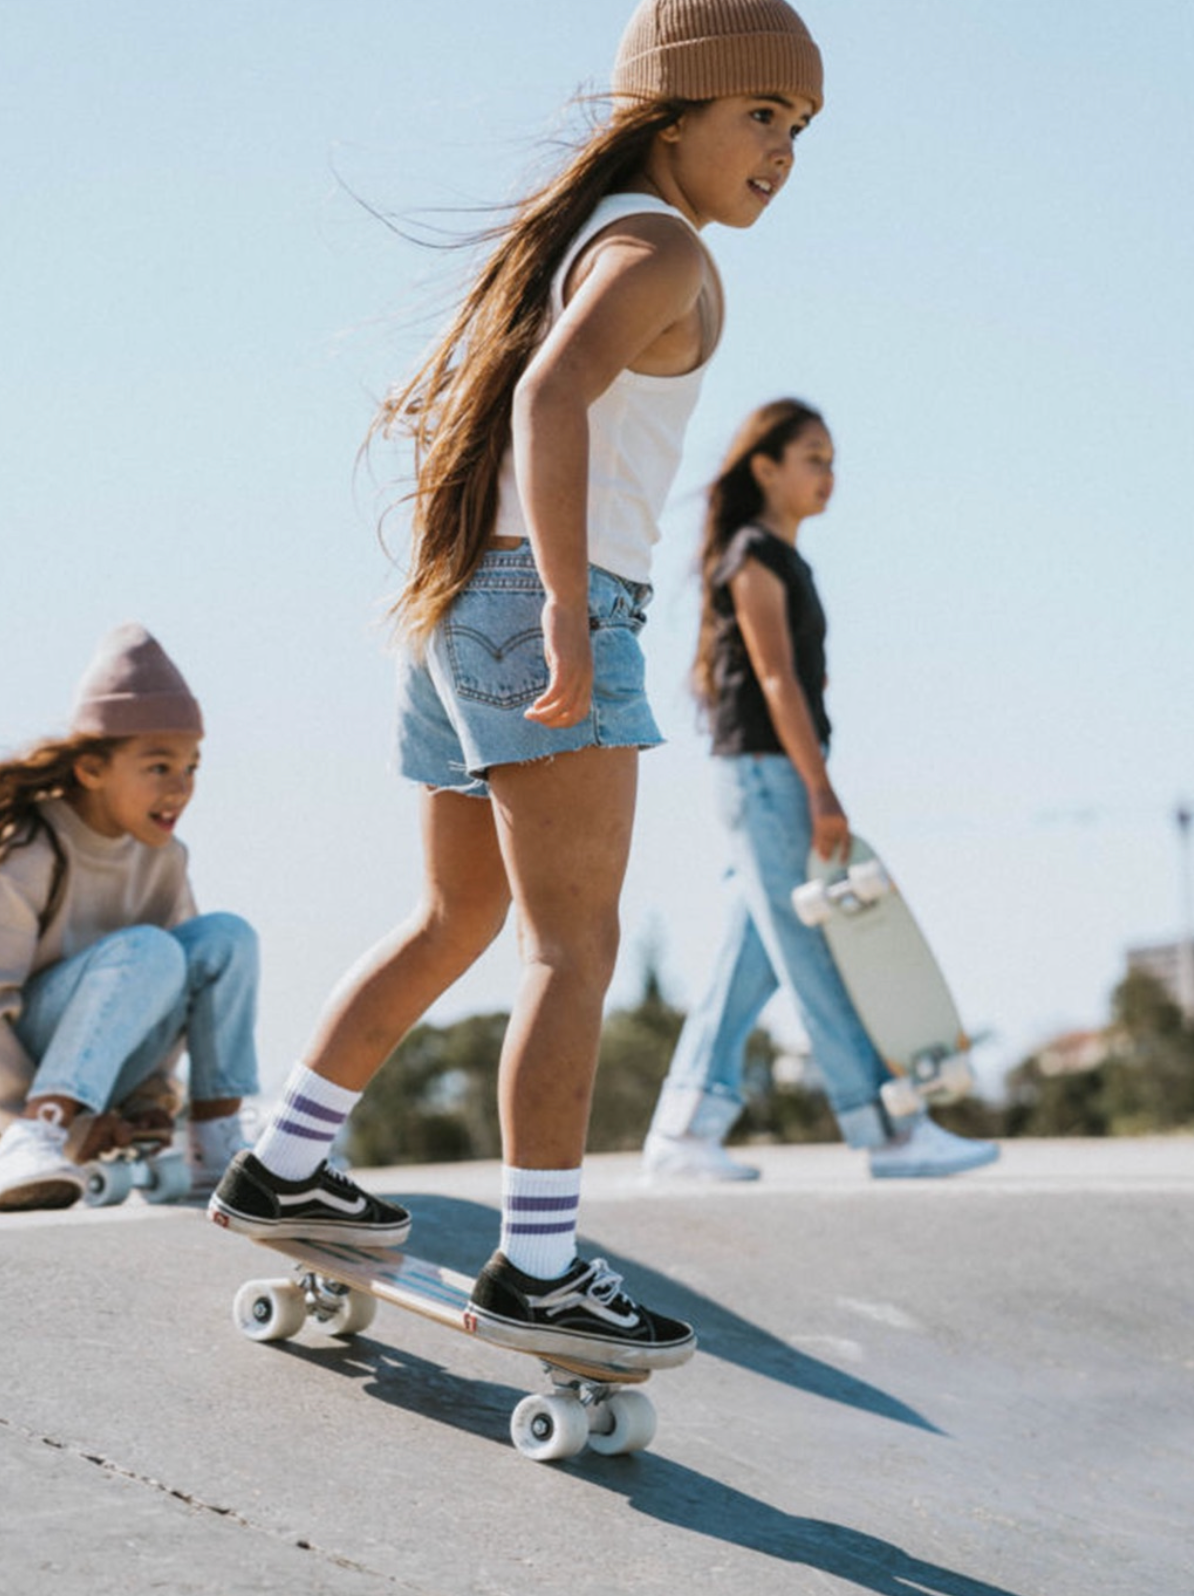 Children&#39;s skateboard